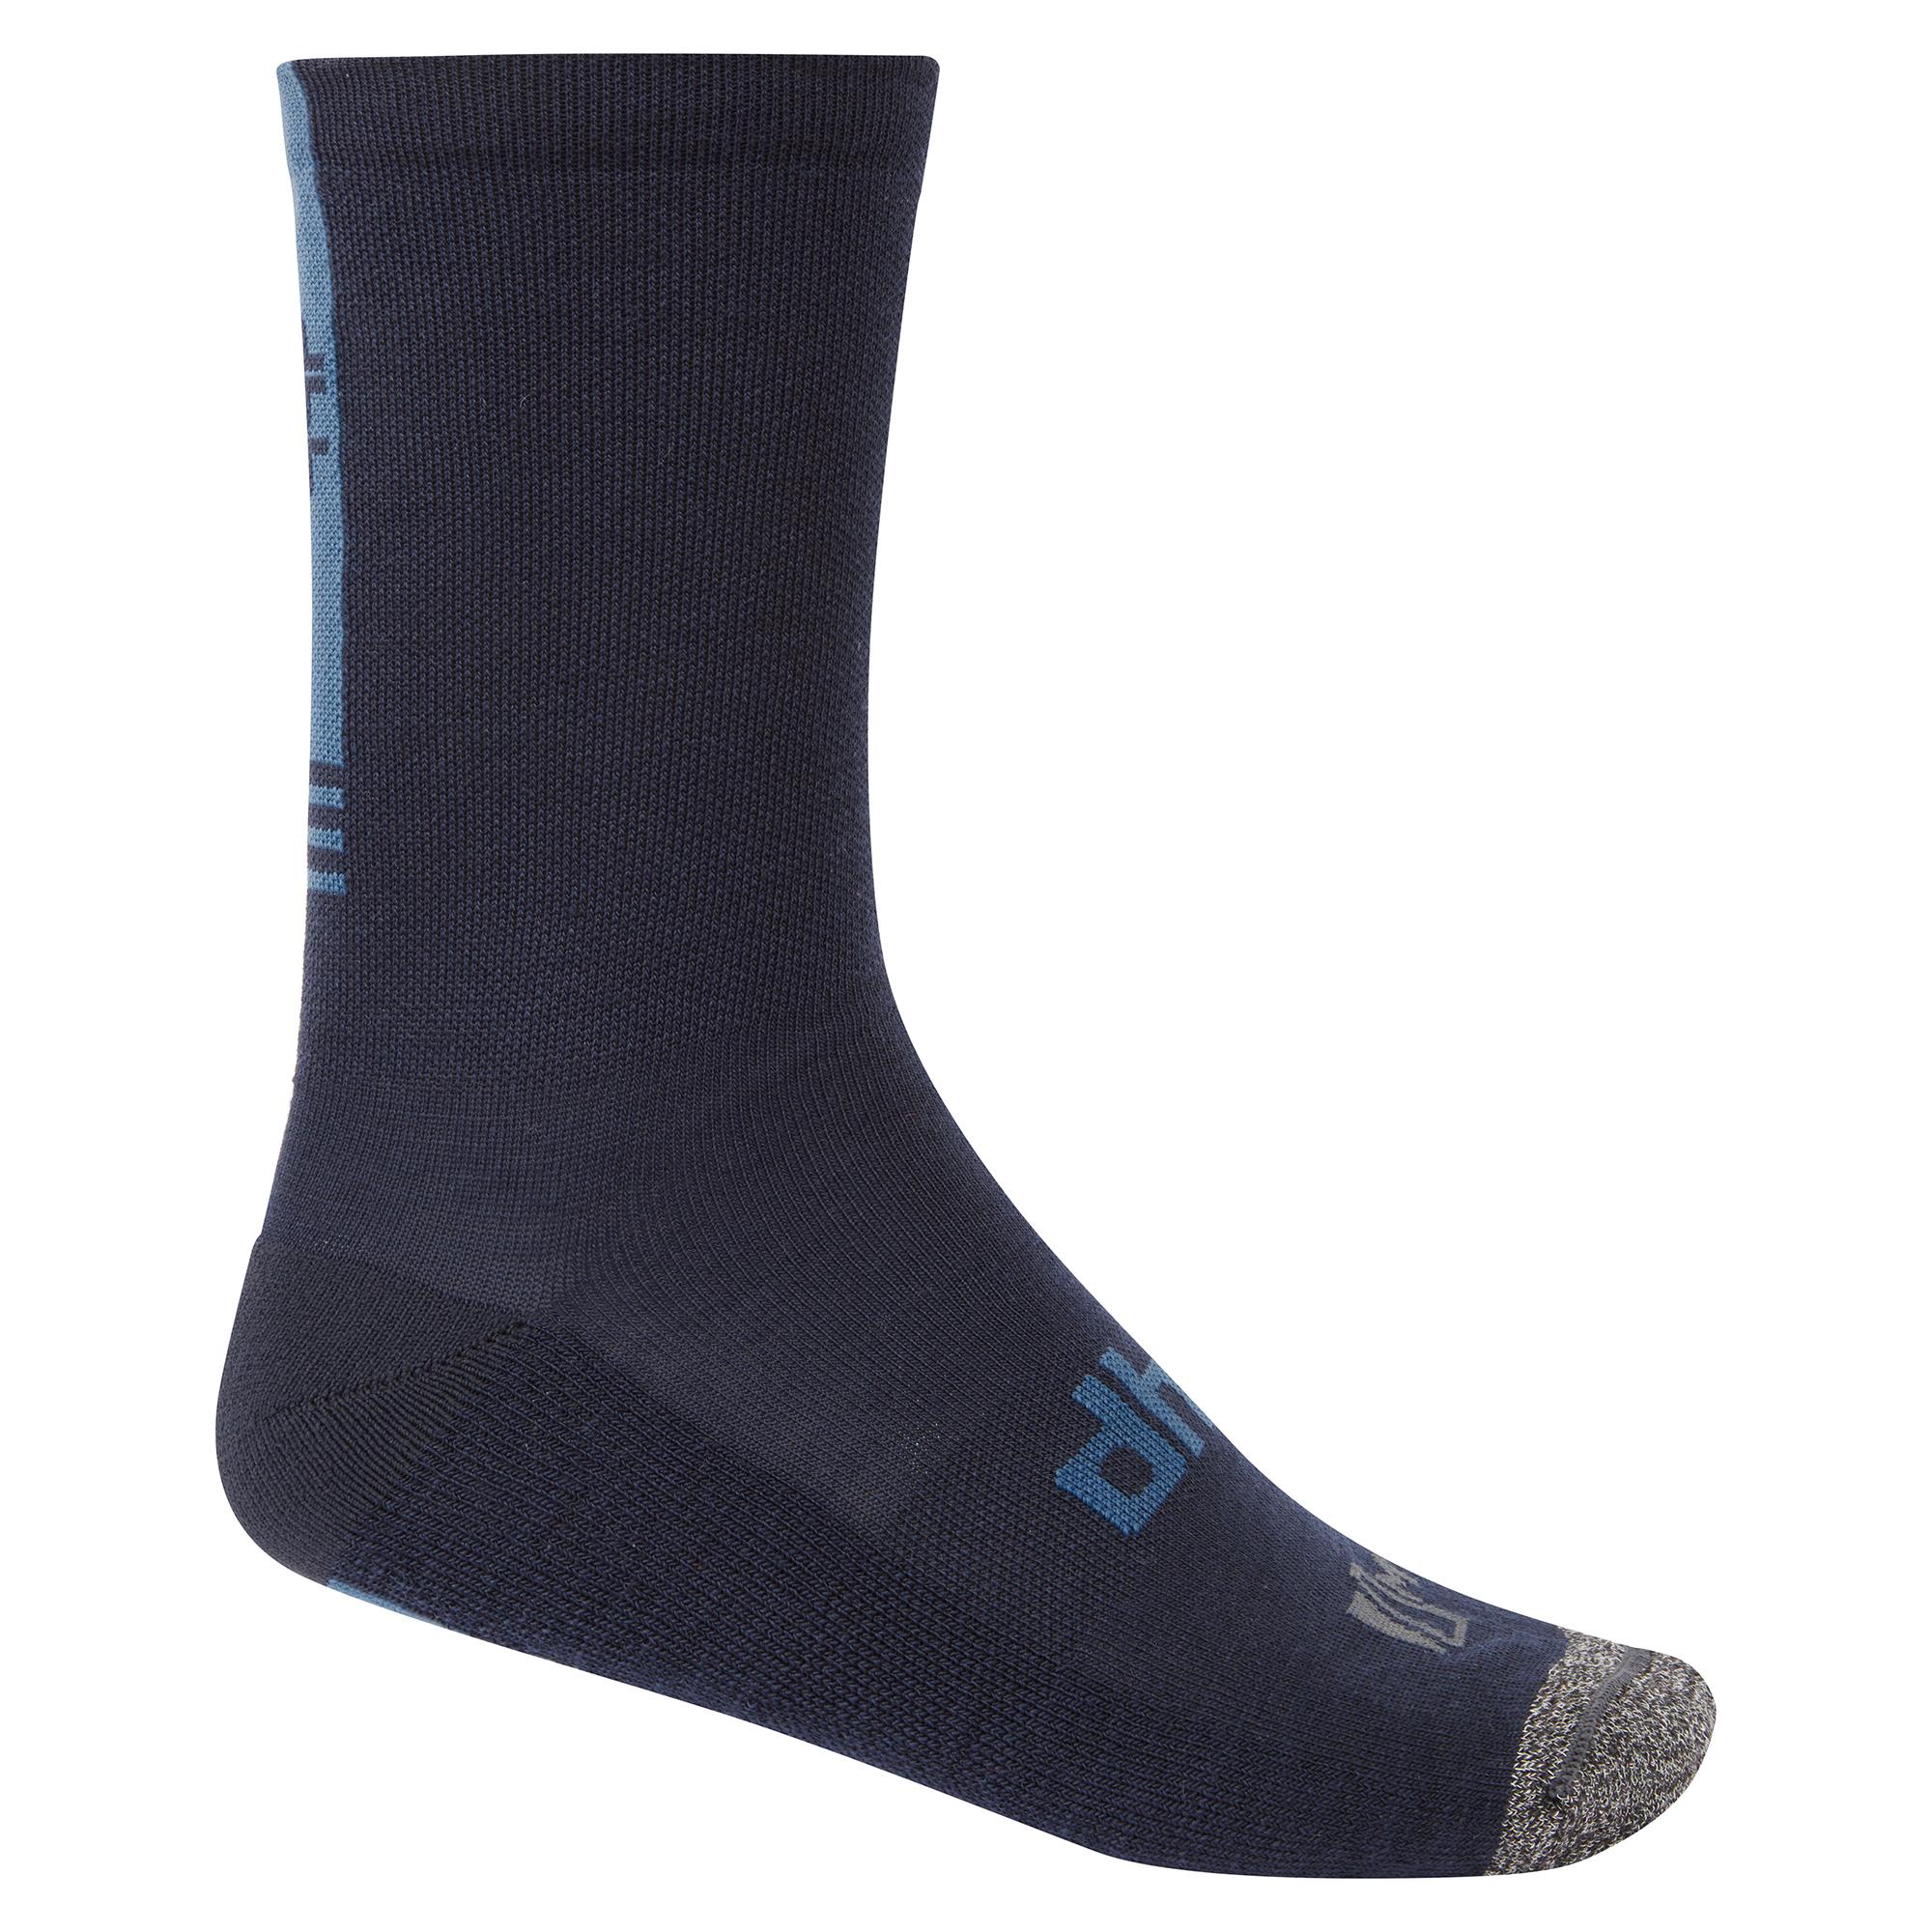 Dhb Aeron Winter Weight Merino Sock 2.0 - Navy/blue